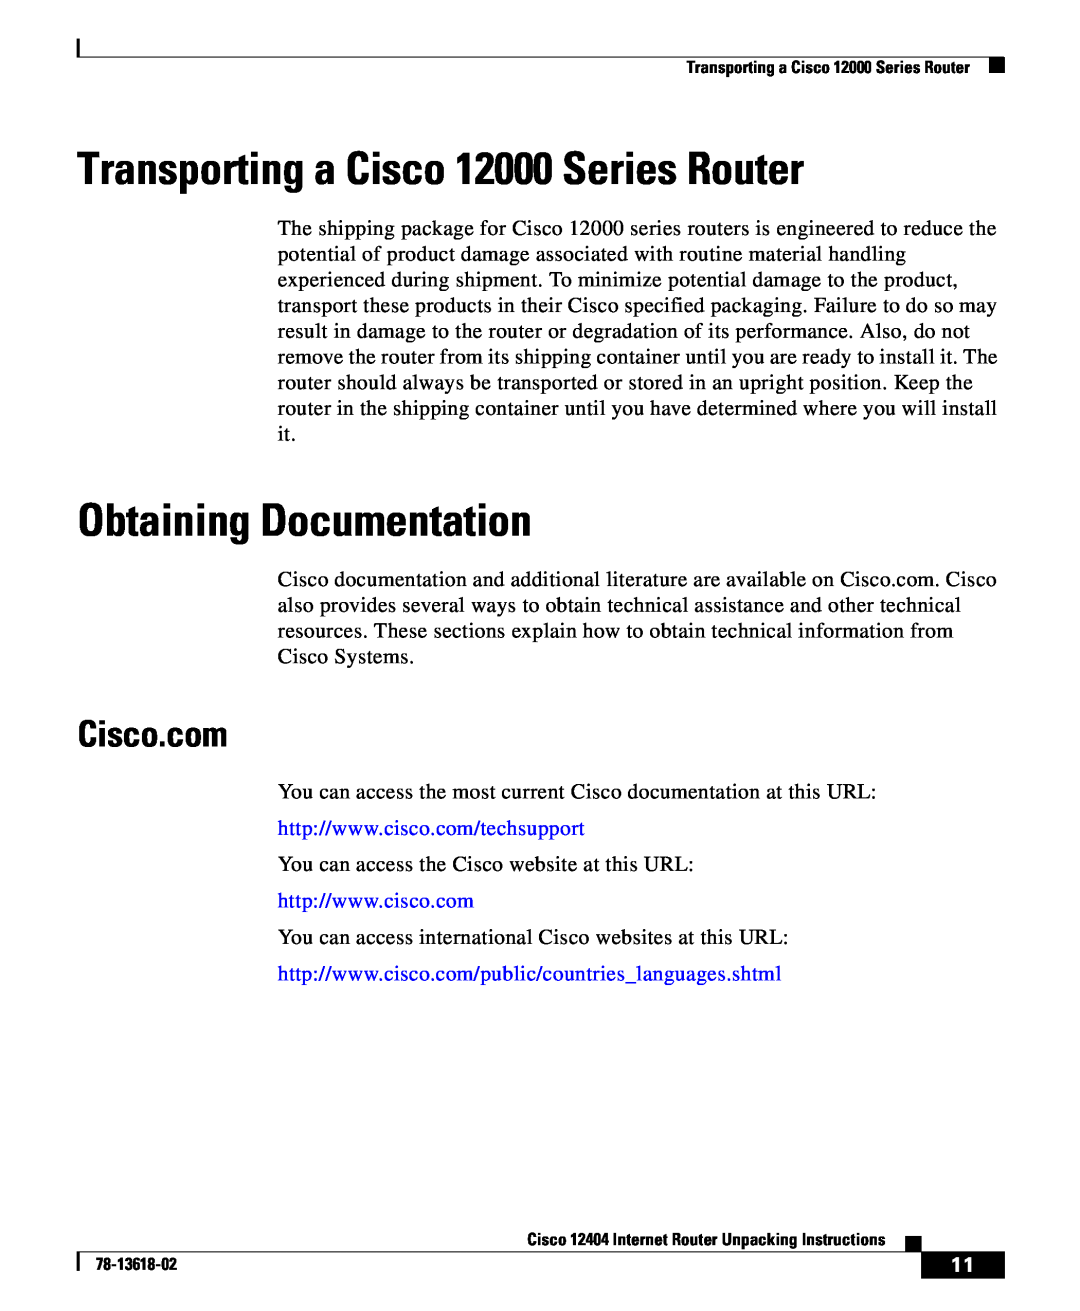 Cisco Systems 12404 manual Transporting a Cisco 12000 Series Router, Obtaining Documentation, Cisco.com 